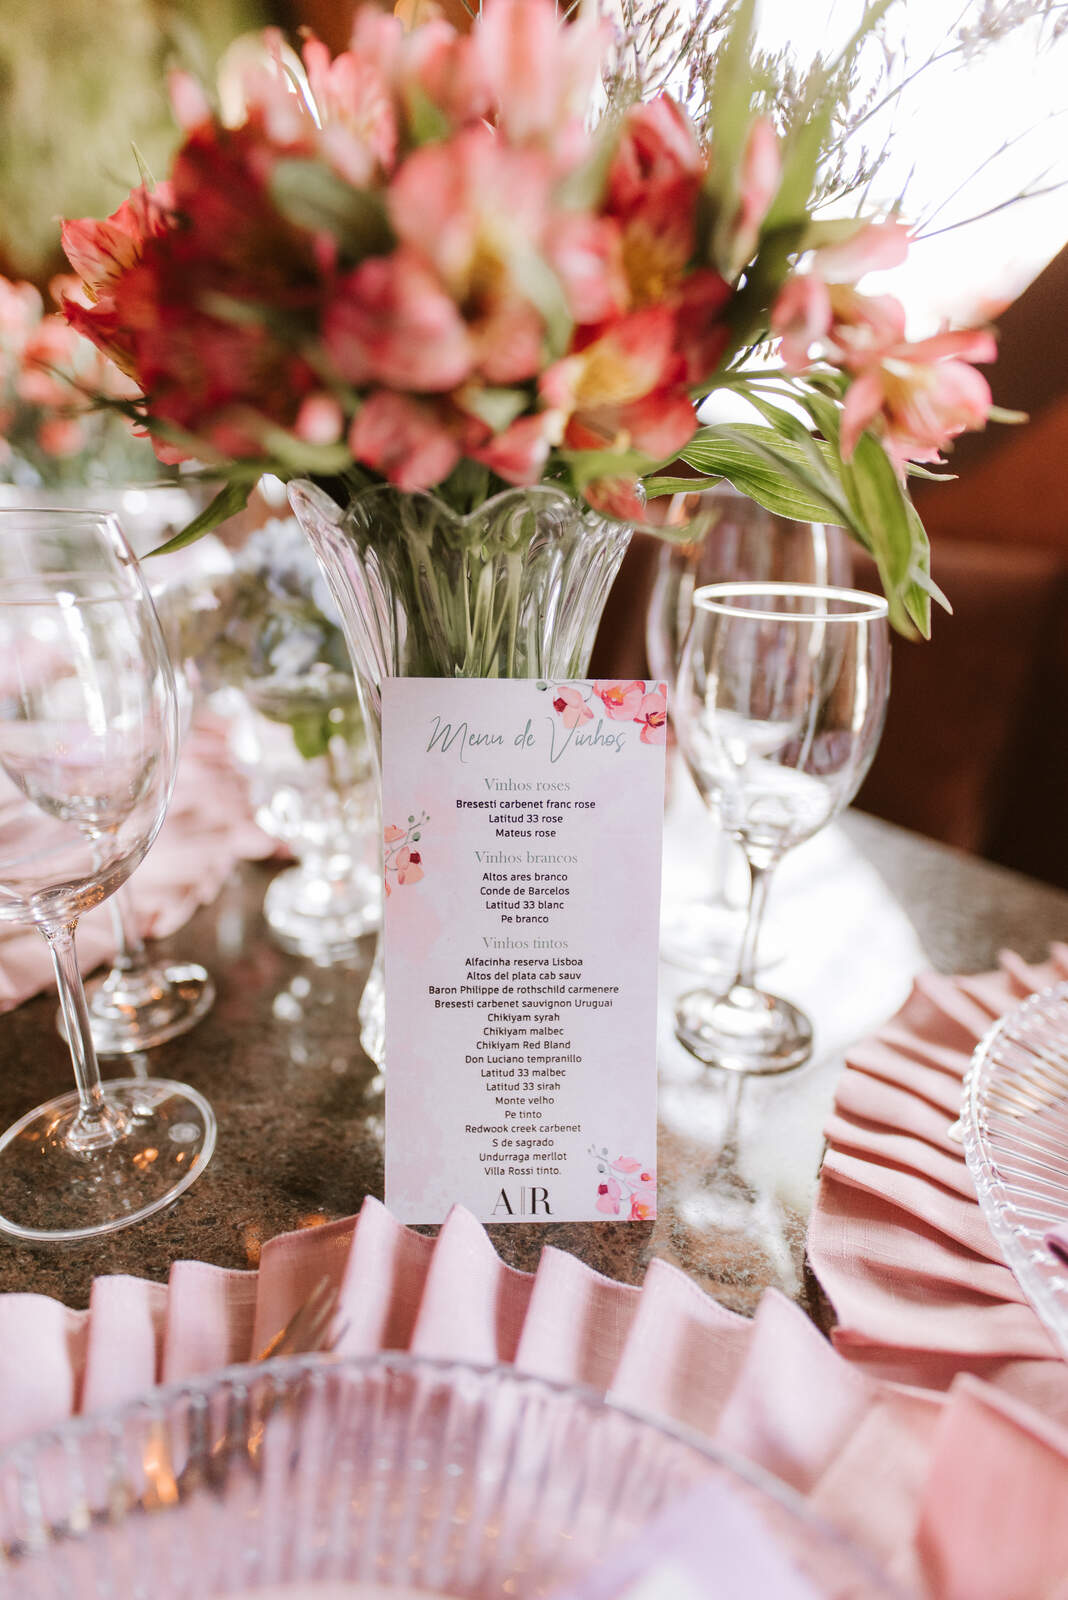 carta de vinhos no centro da mesa com vaso de flores cor de rosa e taças